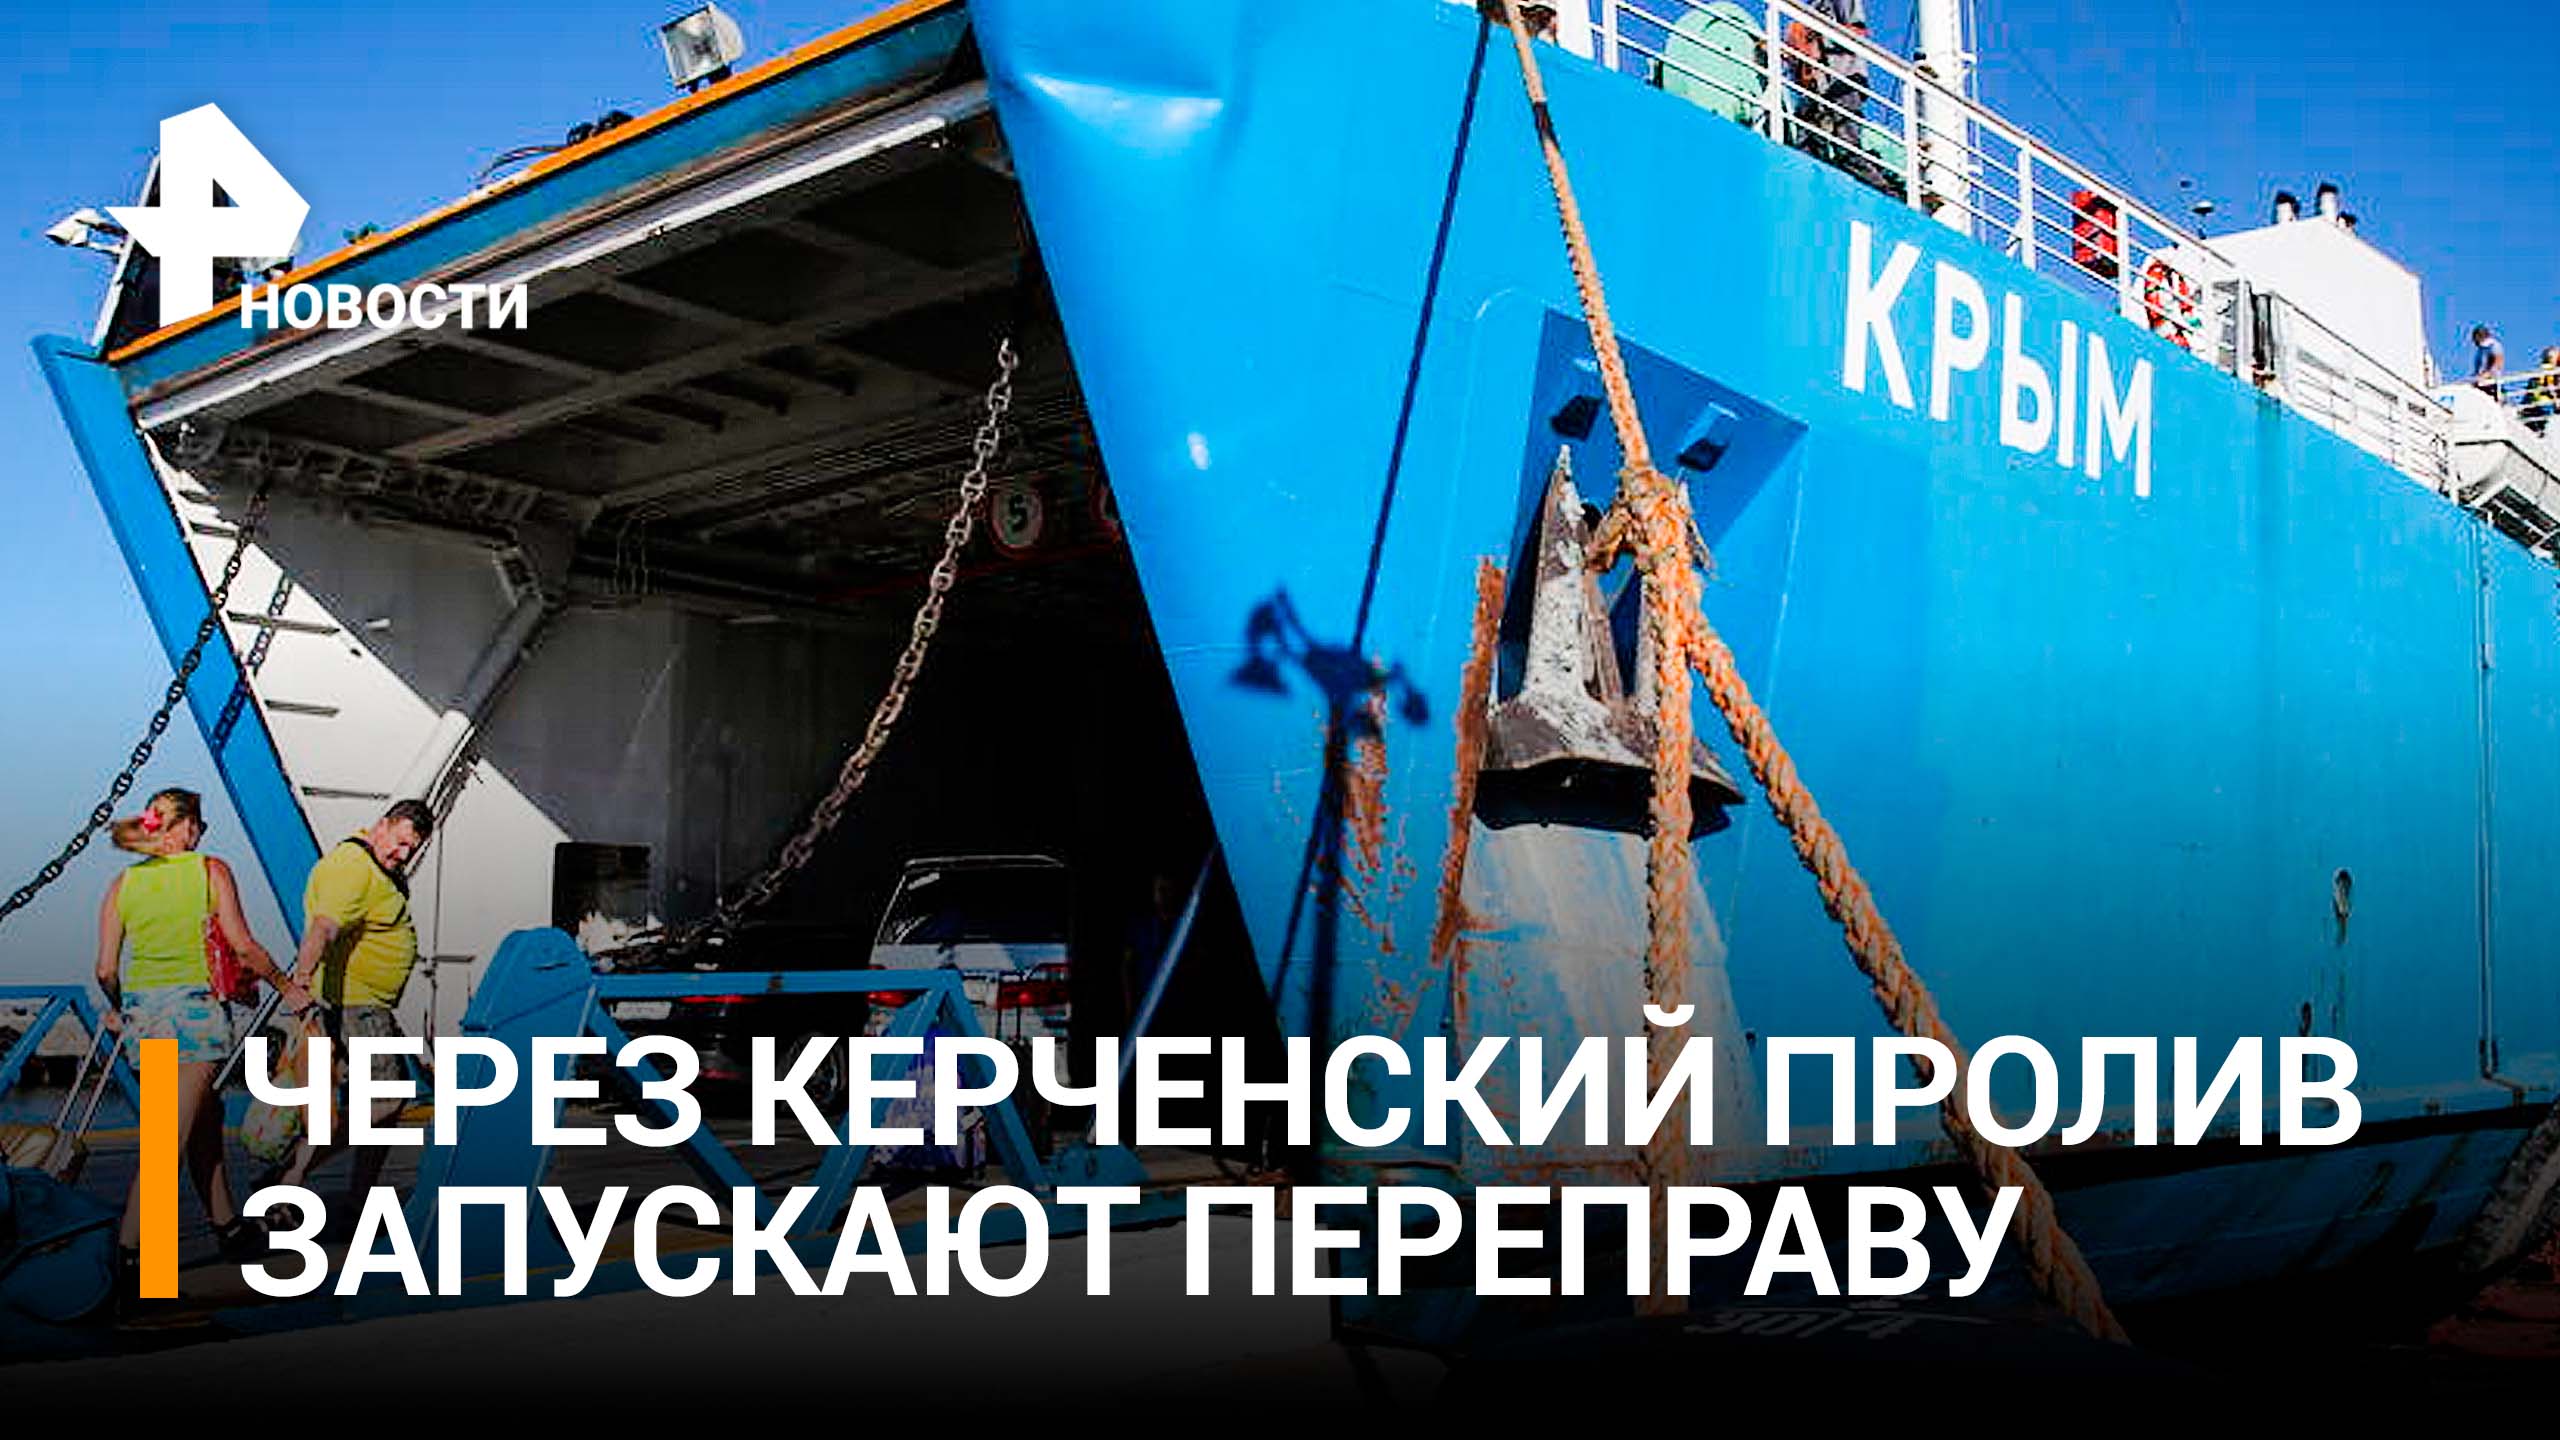 Паромную переправу через Керченский пролив запустят в ближайшие часы / РЕН Новости